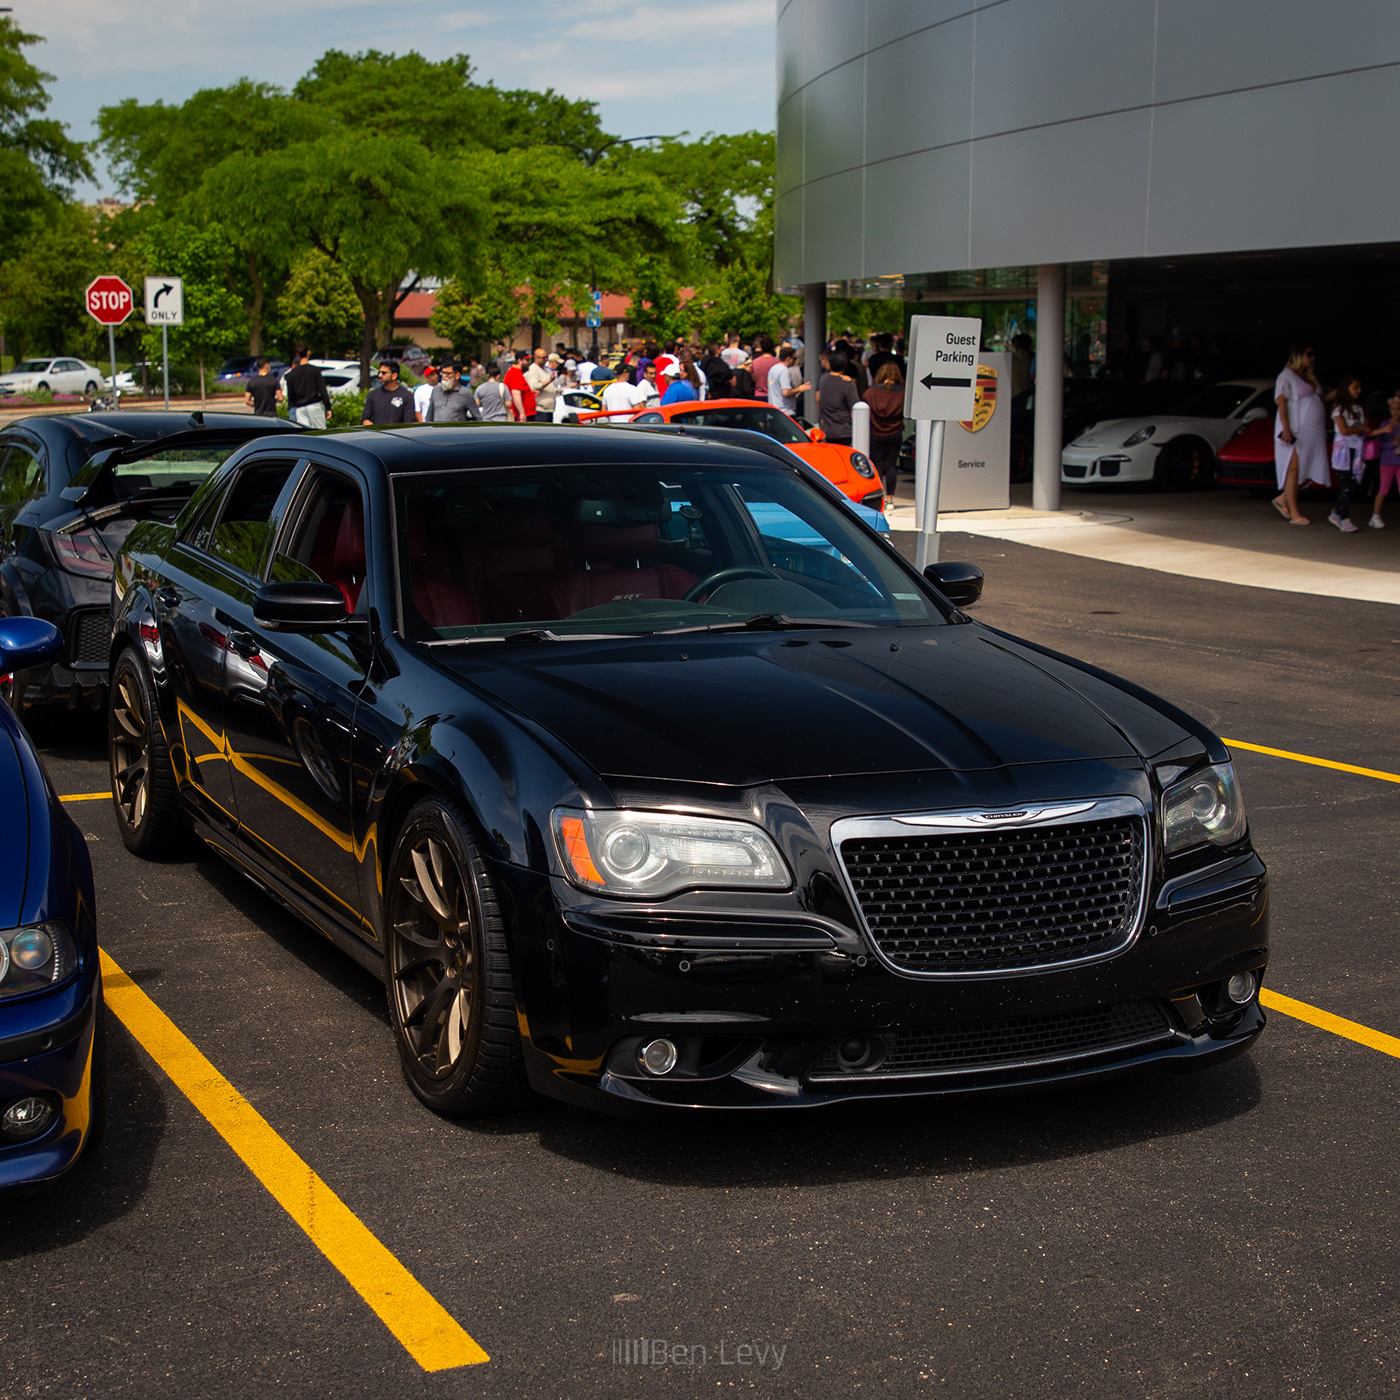 Black Chrysler 300 SRT